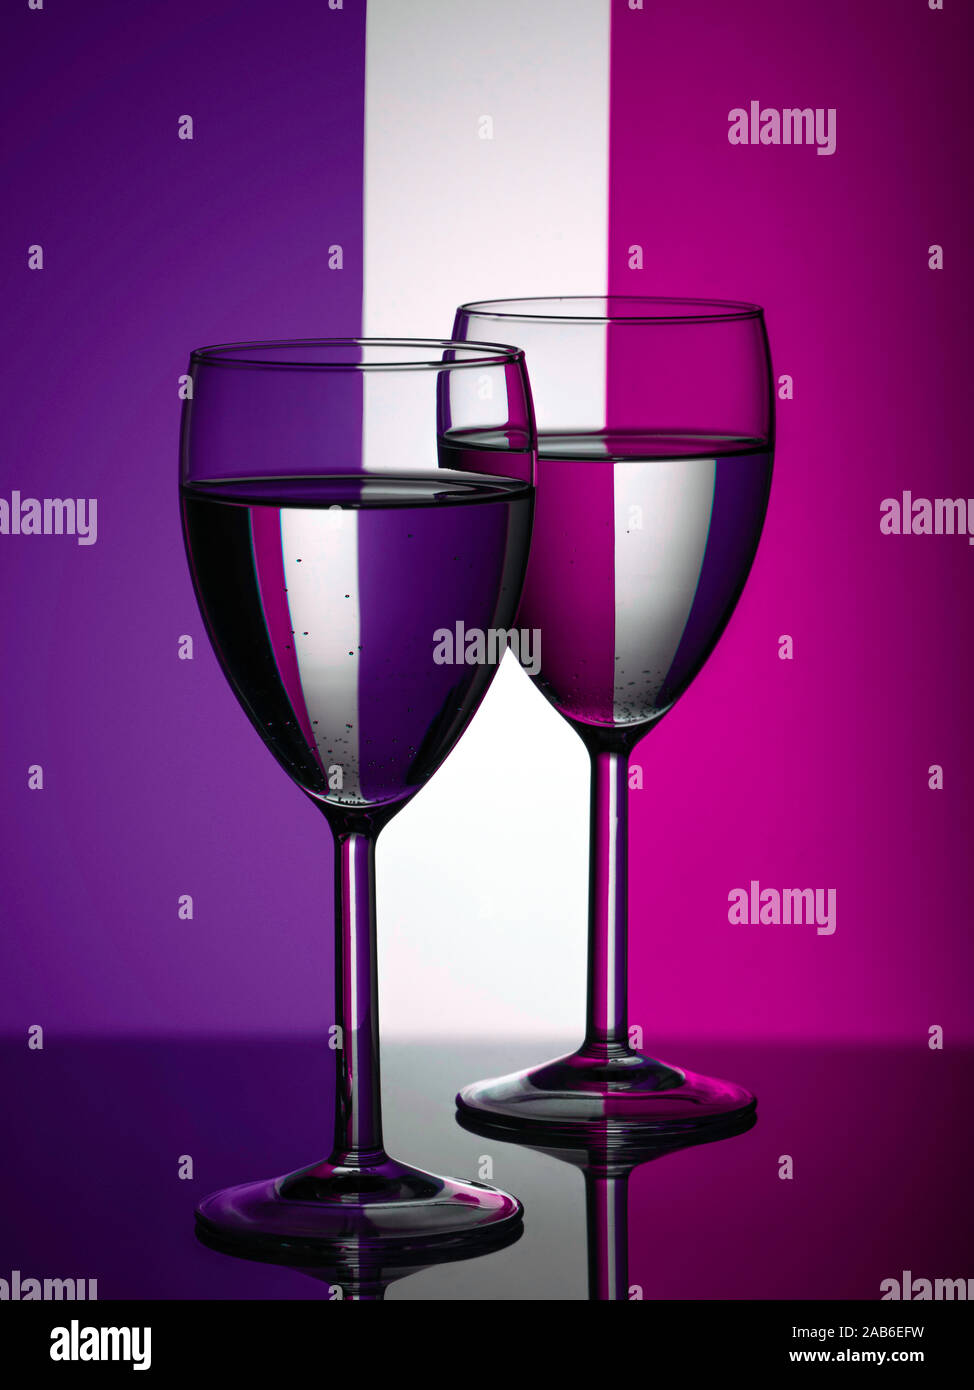 Zwei Weingläser silhouette voll auf farbigem Hintergrund. Lila und violett Streifen im Hintergrund. Alkohol trinken. Stockfoto